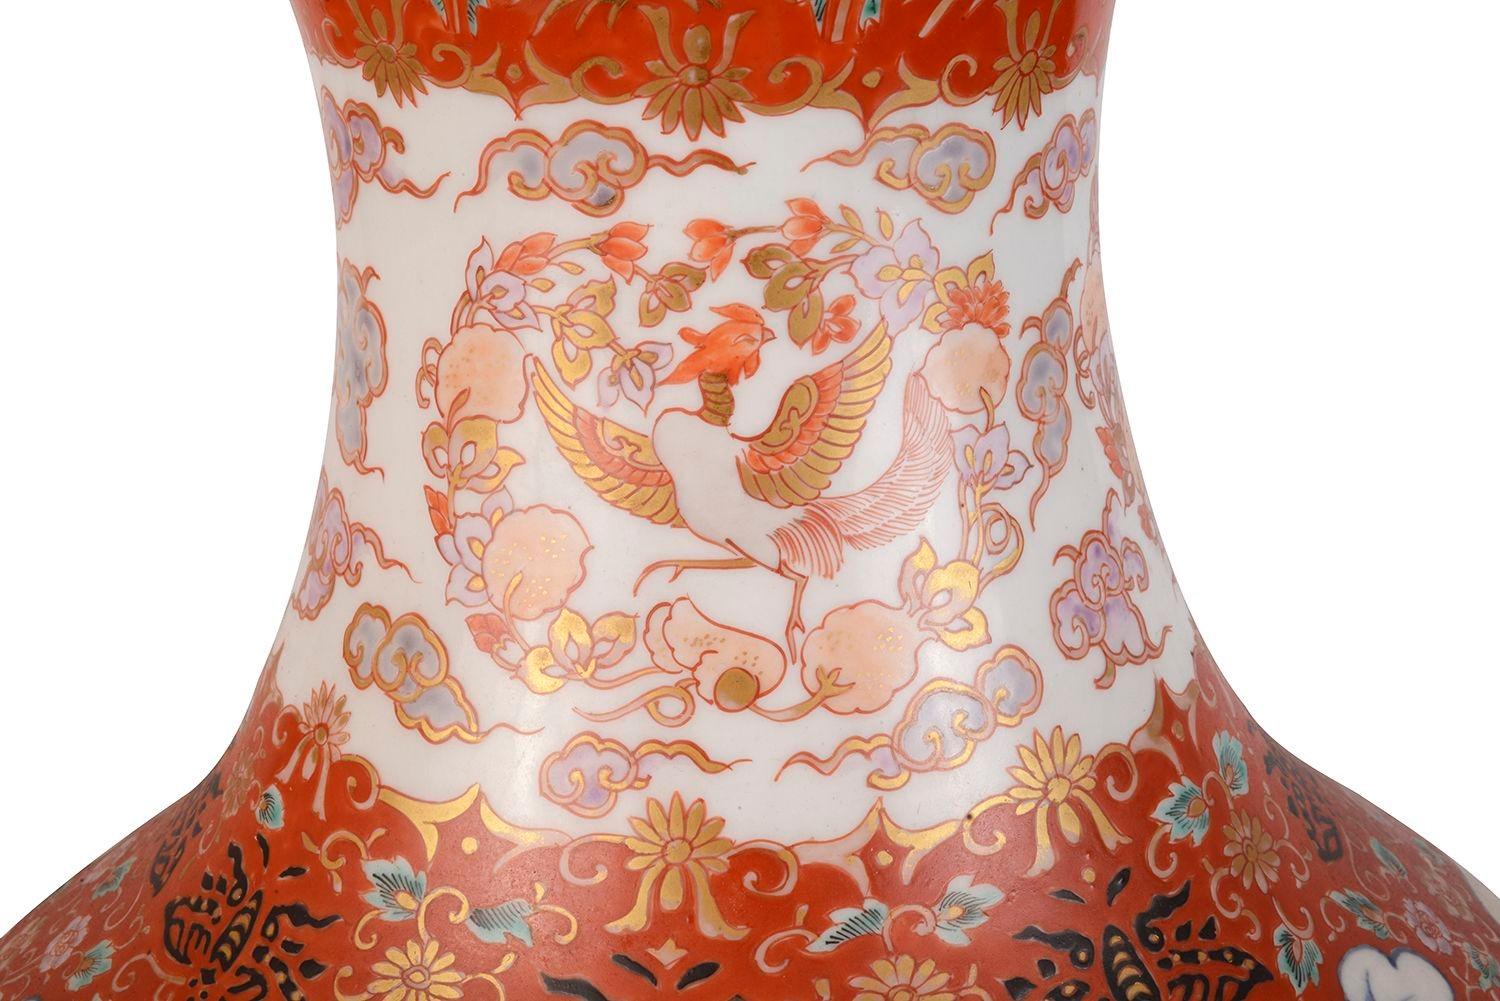 Hand-Painted Large Japanese Korango Imari Bamboo Patterned Vase, circa 1900 For Sale